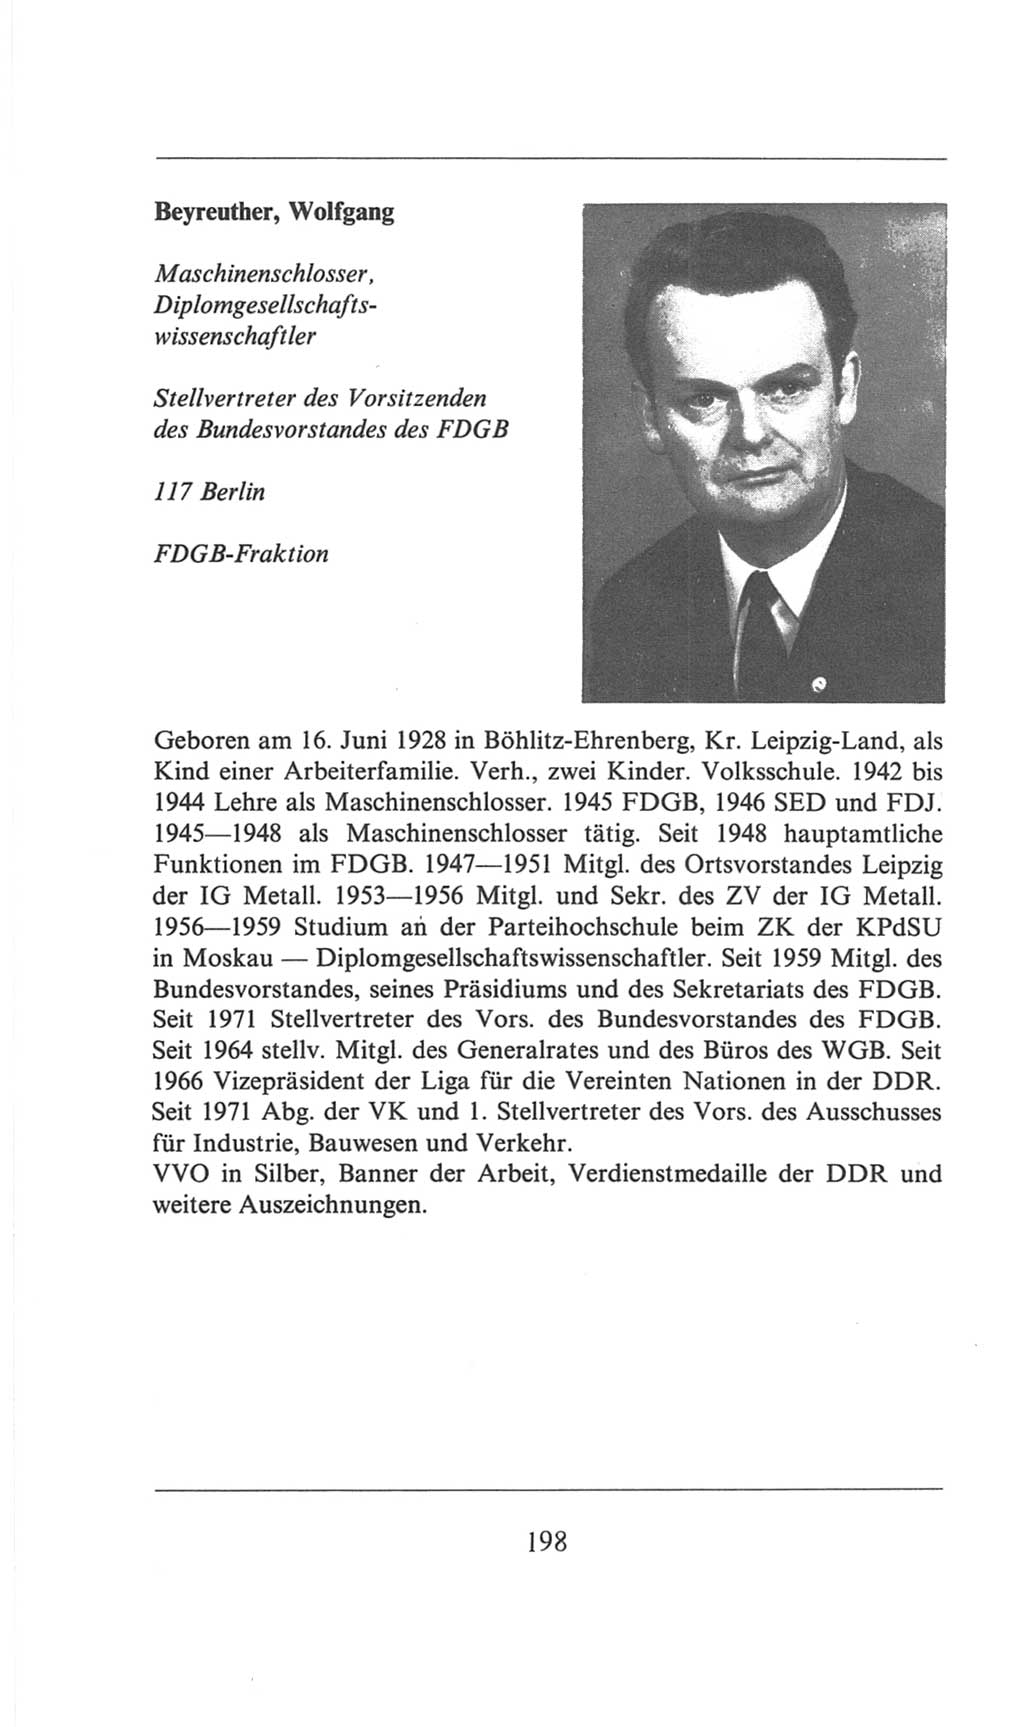 Volkskammer (VK) der Deutschen Demokratischen Republik (DDR), 6. Wahlperiode 1971-1976, Seite 198 (VK. DDR 6. WP. 1971-1976, S. 198)